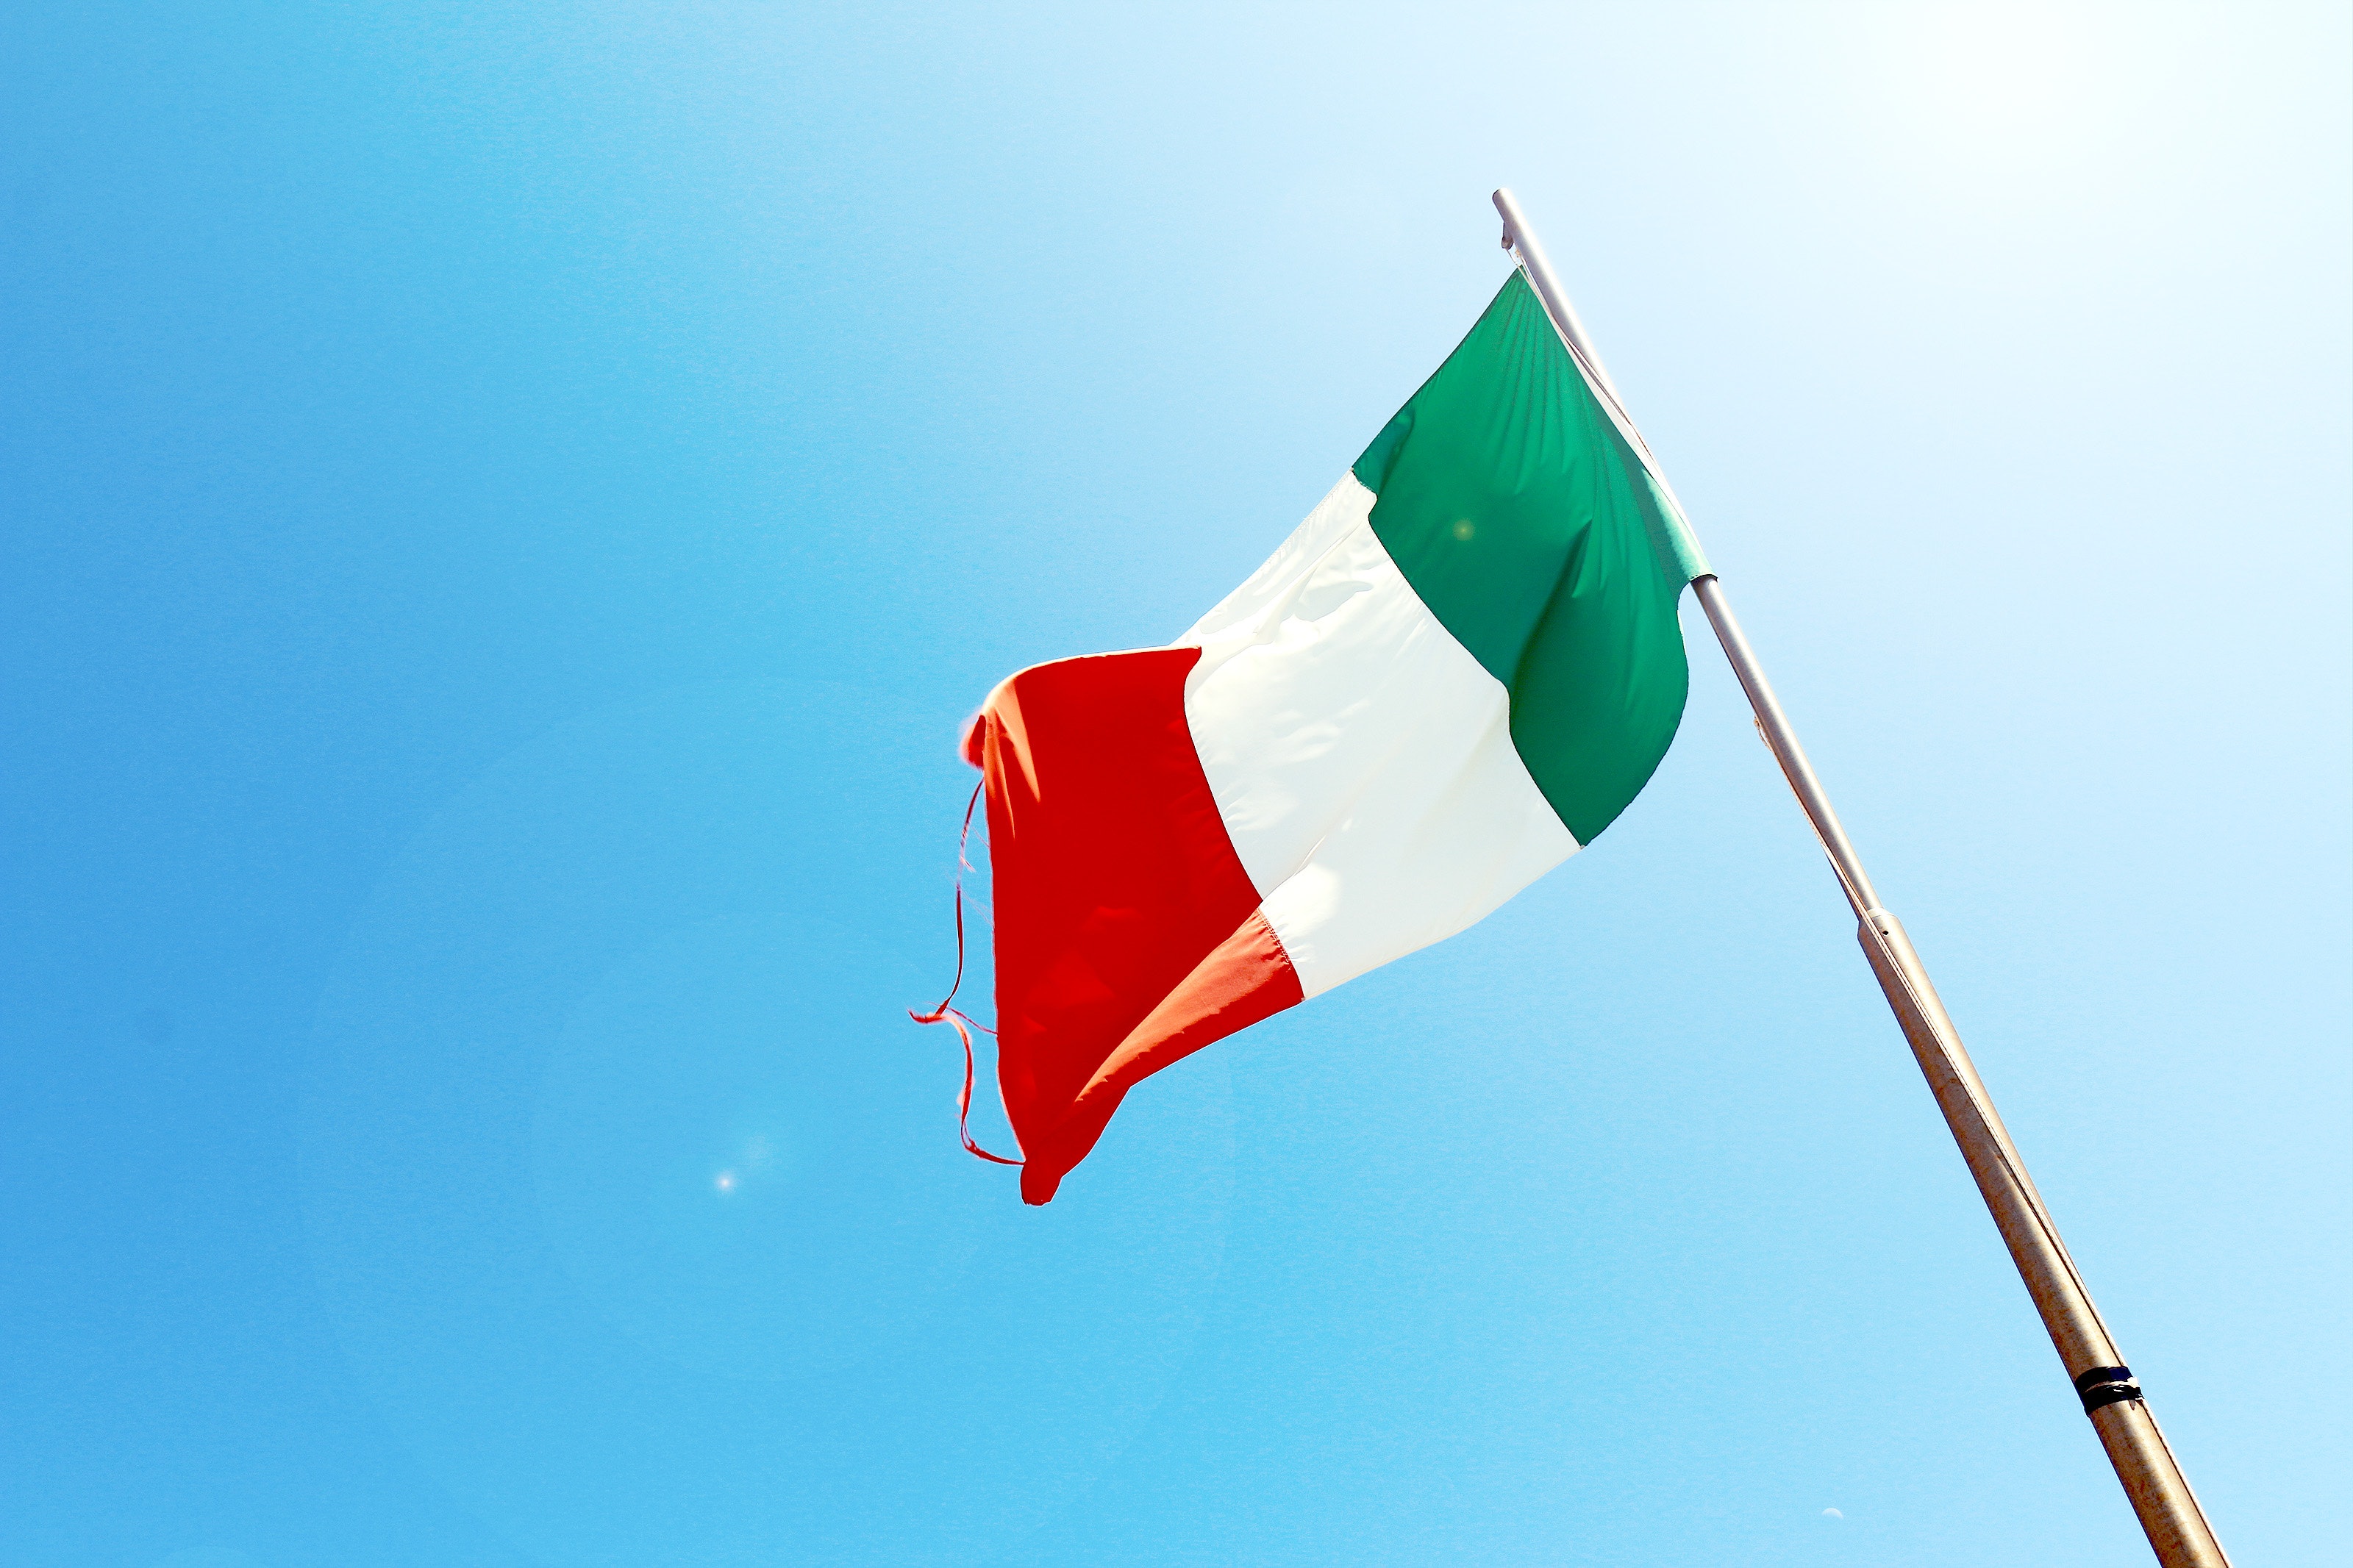 L’Italia mantiene limiti più bassi per l’esposizione alle radiazioni